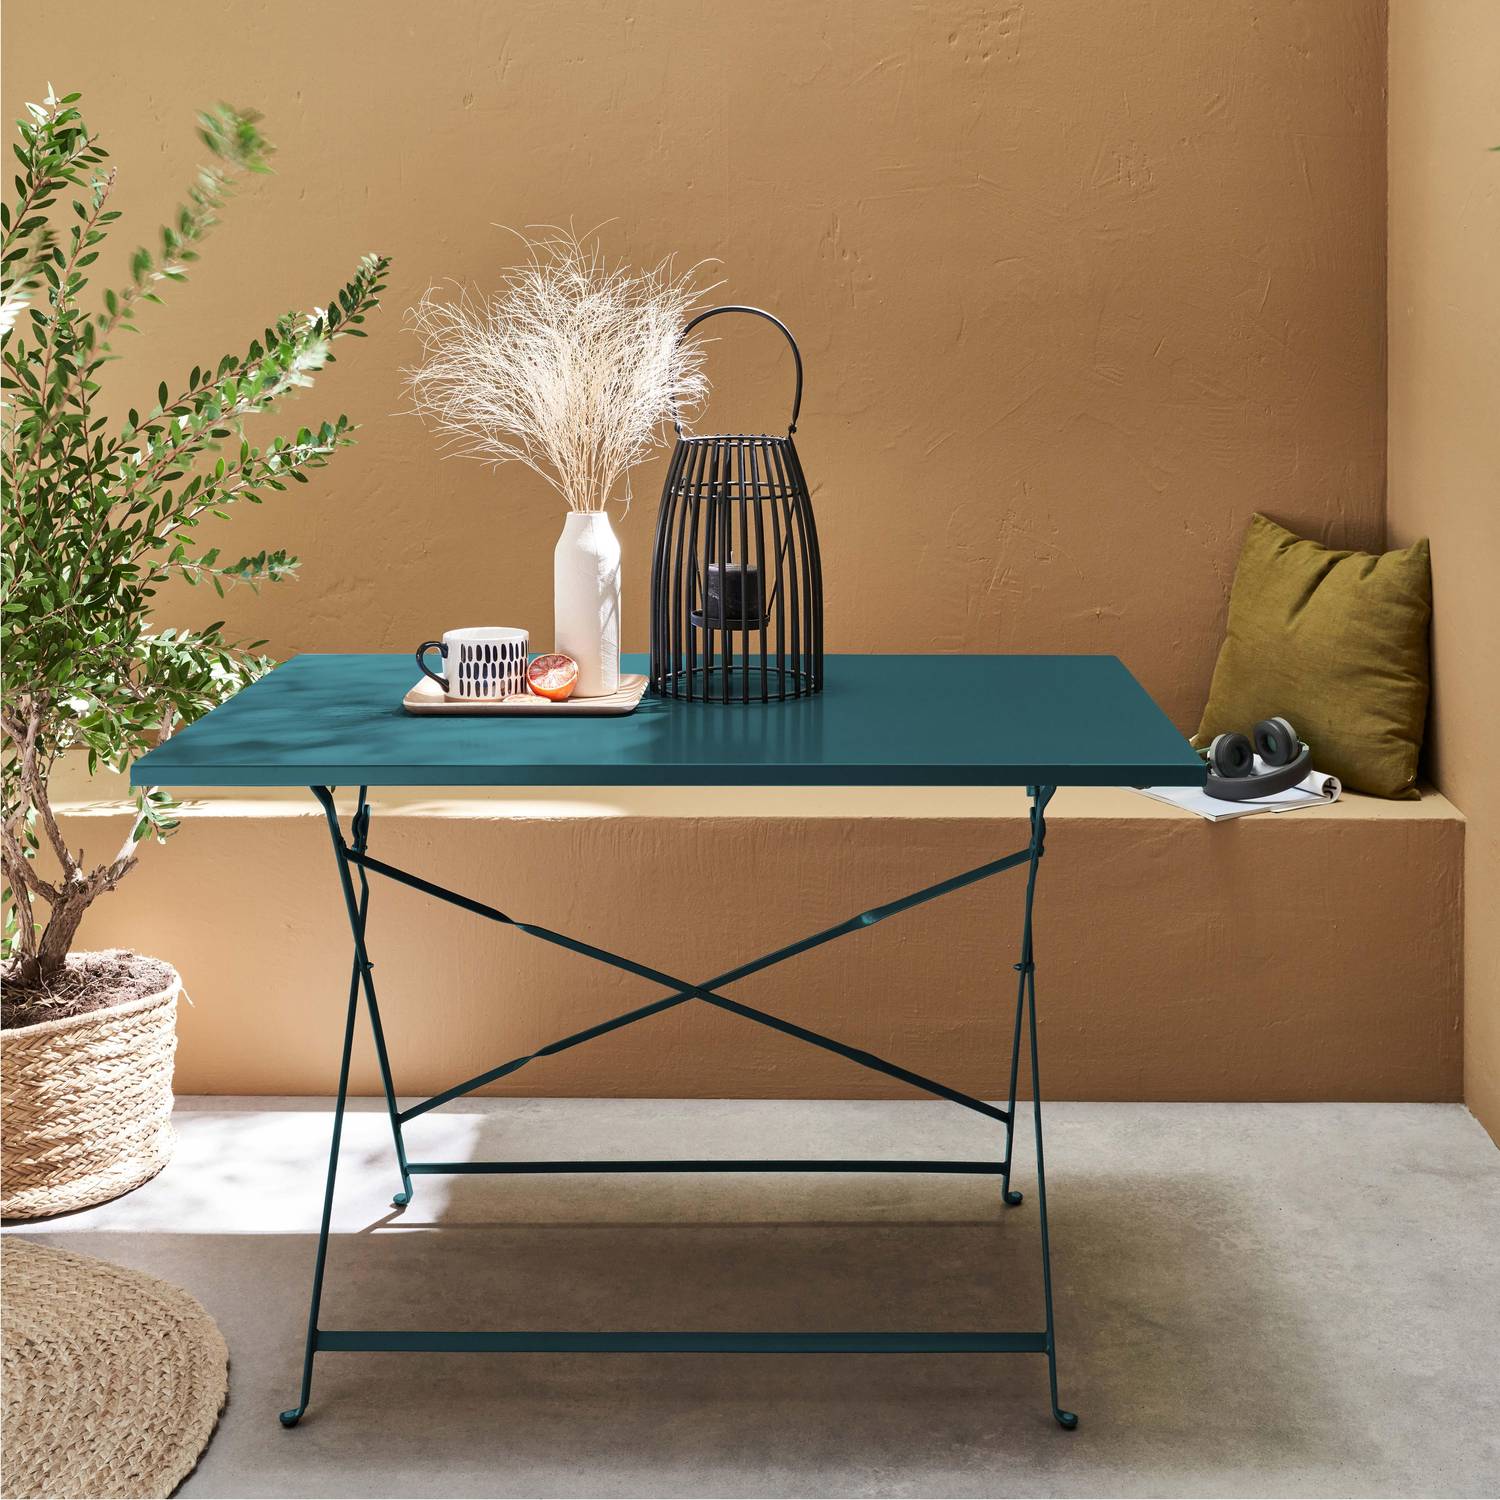 Emilia - Bistro tuintafel opvouwbaar - Rechthoekige tafel 110x70cm van staal met thermolak - Donker turquoise  Photo1